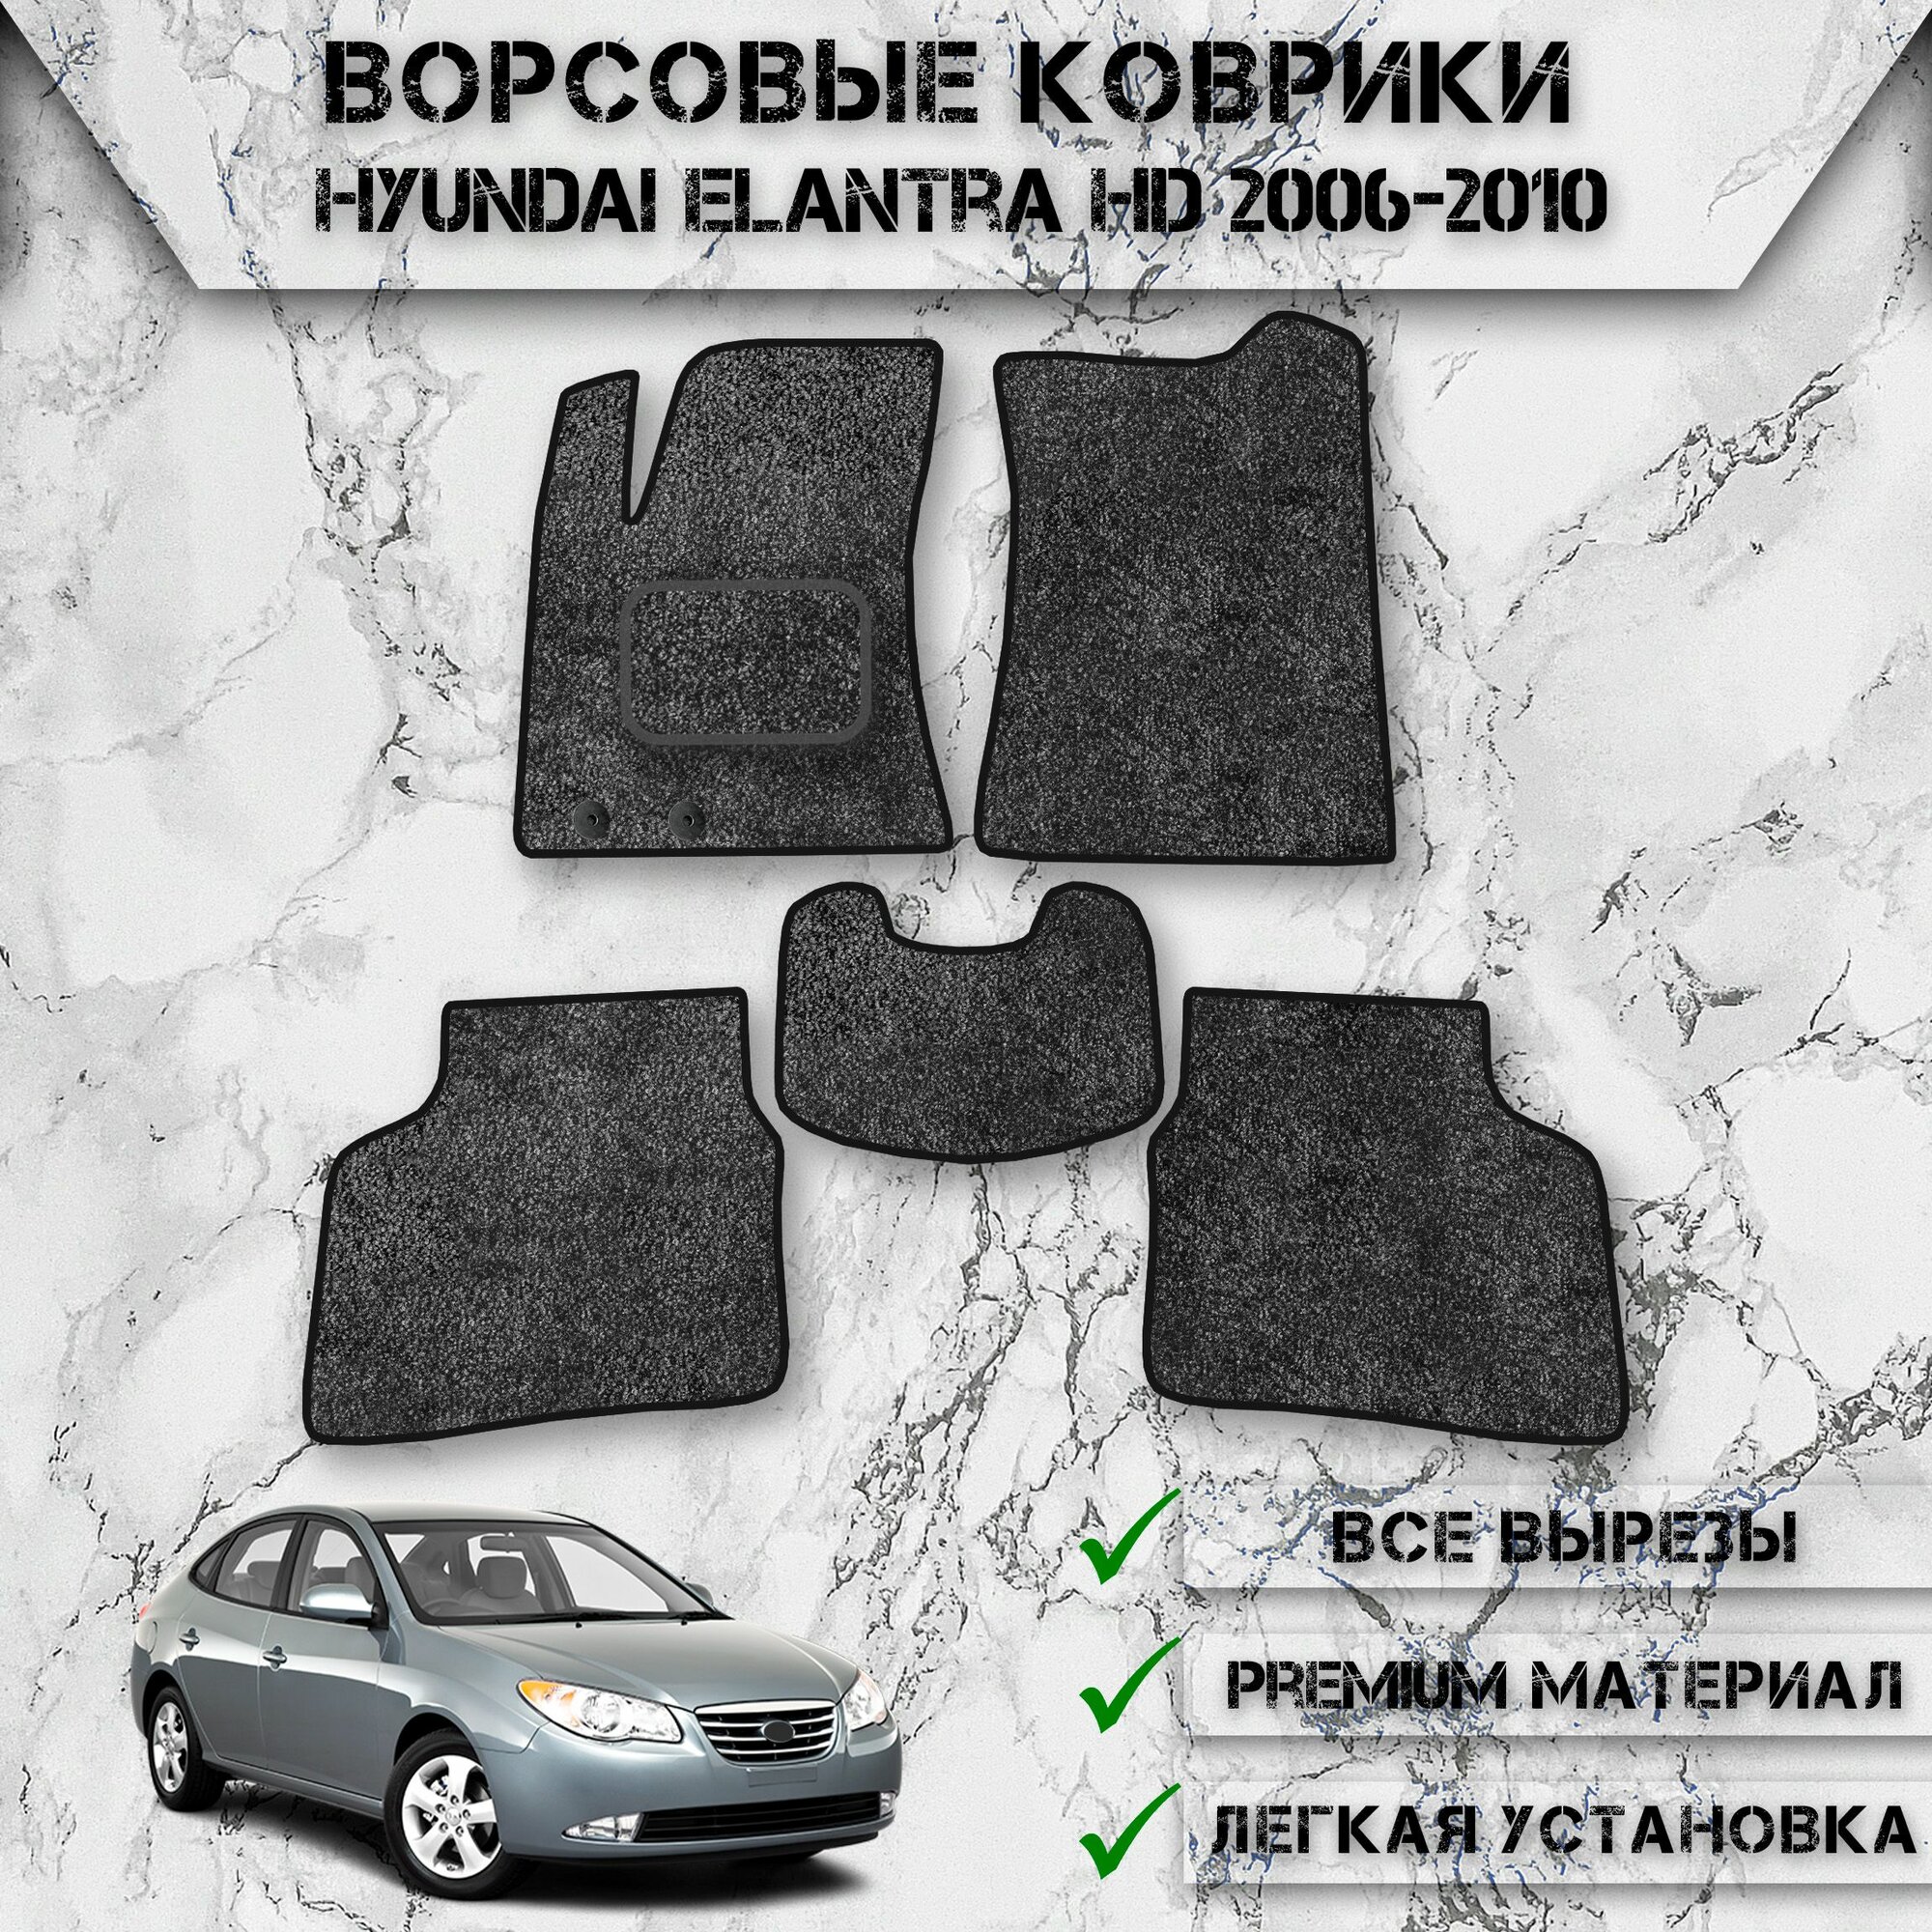 Ворсовые коврики для авто Хюндай Элантра / Hyundai Elantra HD 2006-2010 Г. В. Серый С Чёрным Кантом